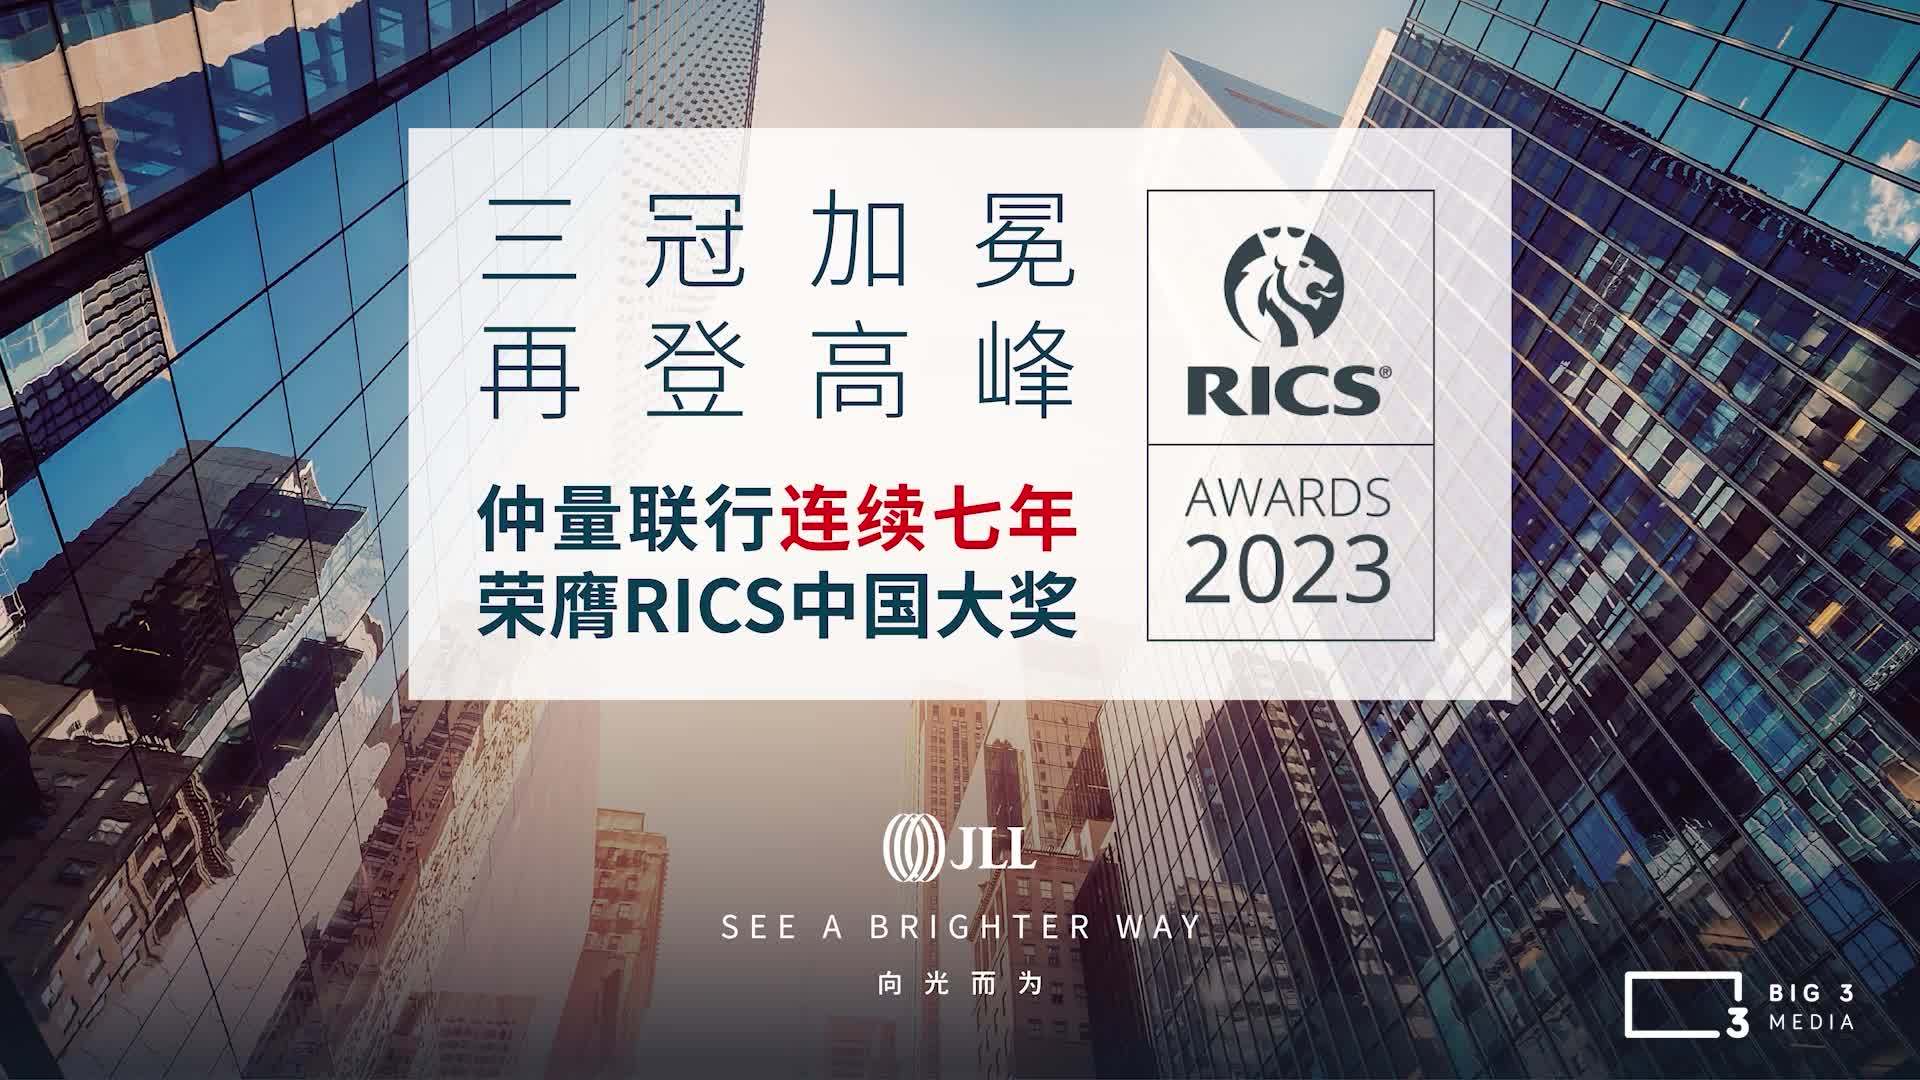 【BIG 3 MEDIA】JLL 2023 RICS 获奖视频